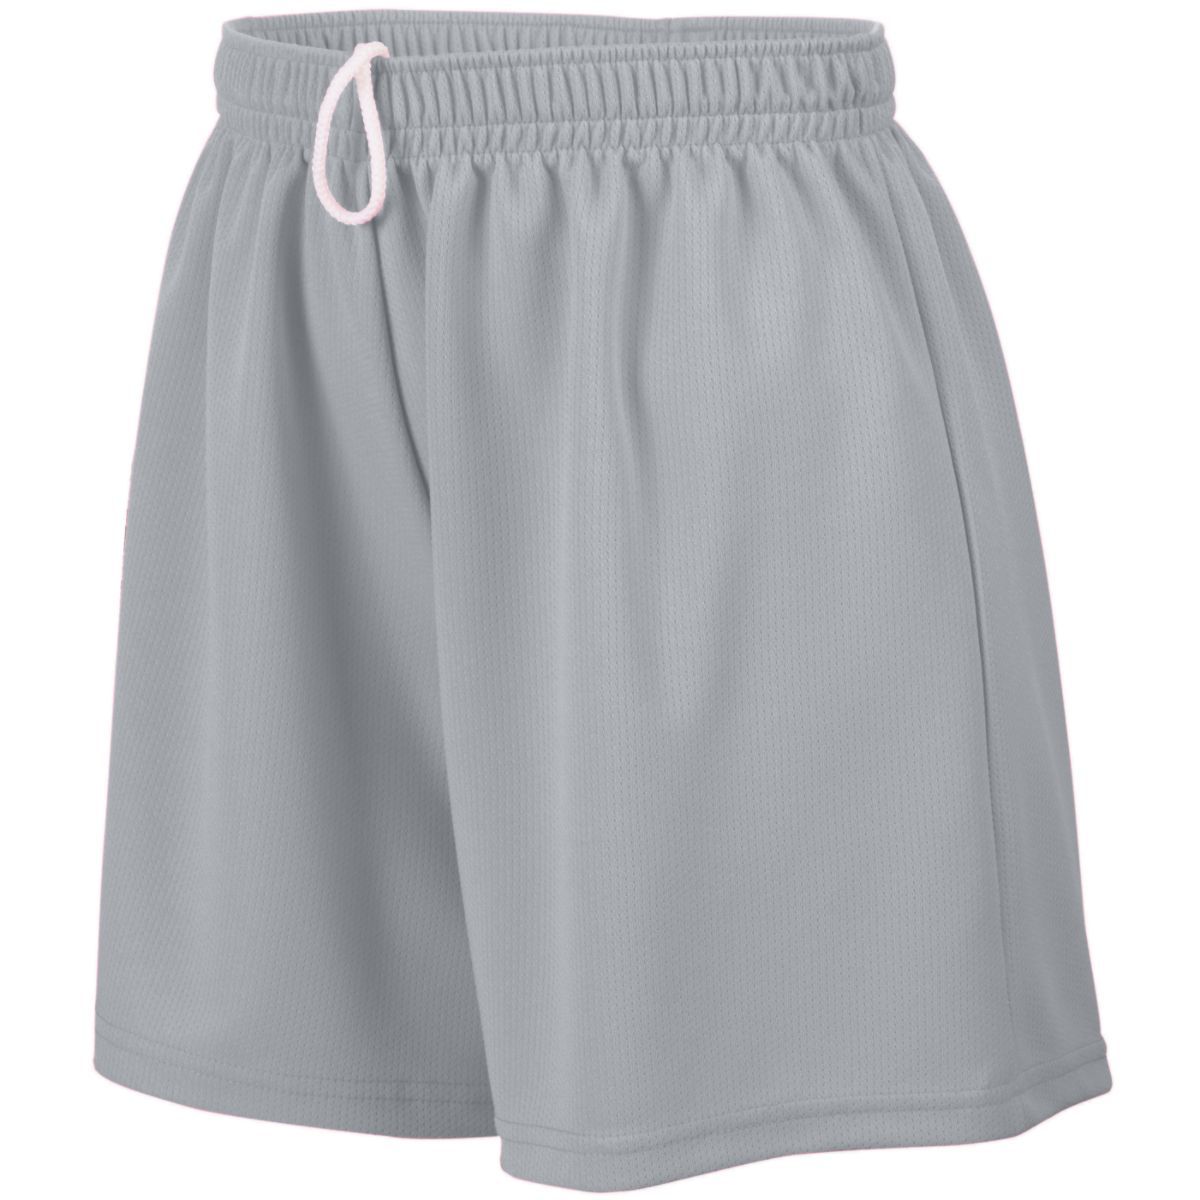 Ladies Wicking Mesh Shorts - 960